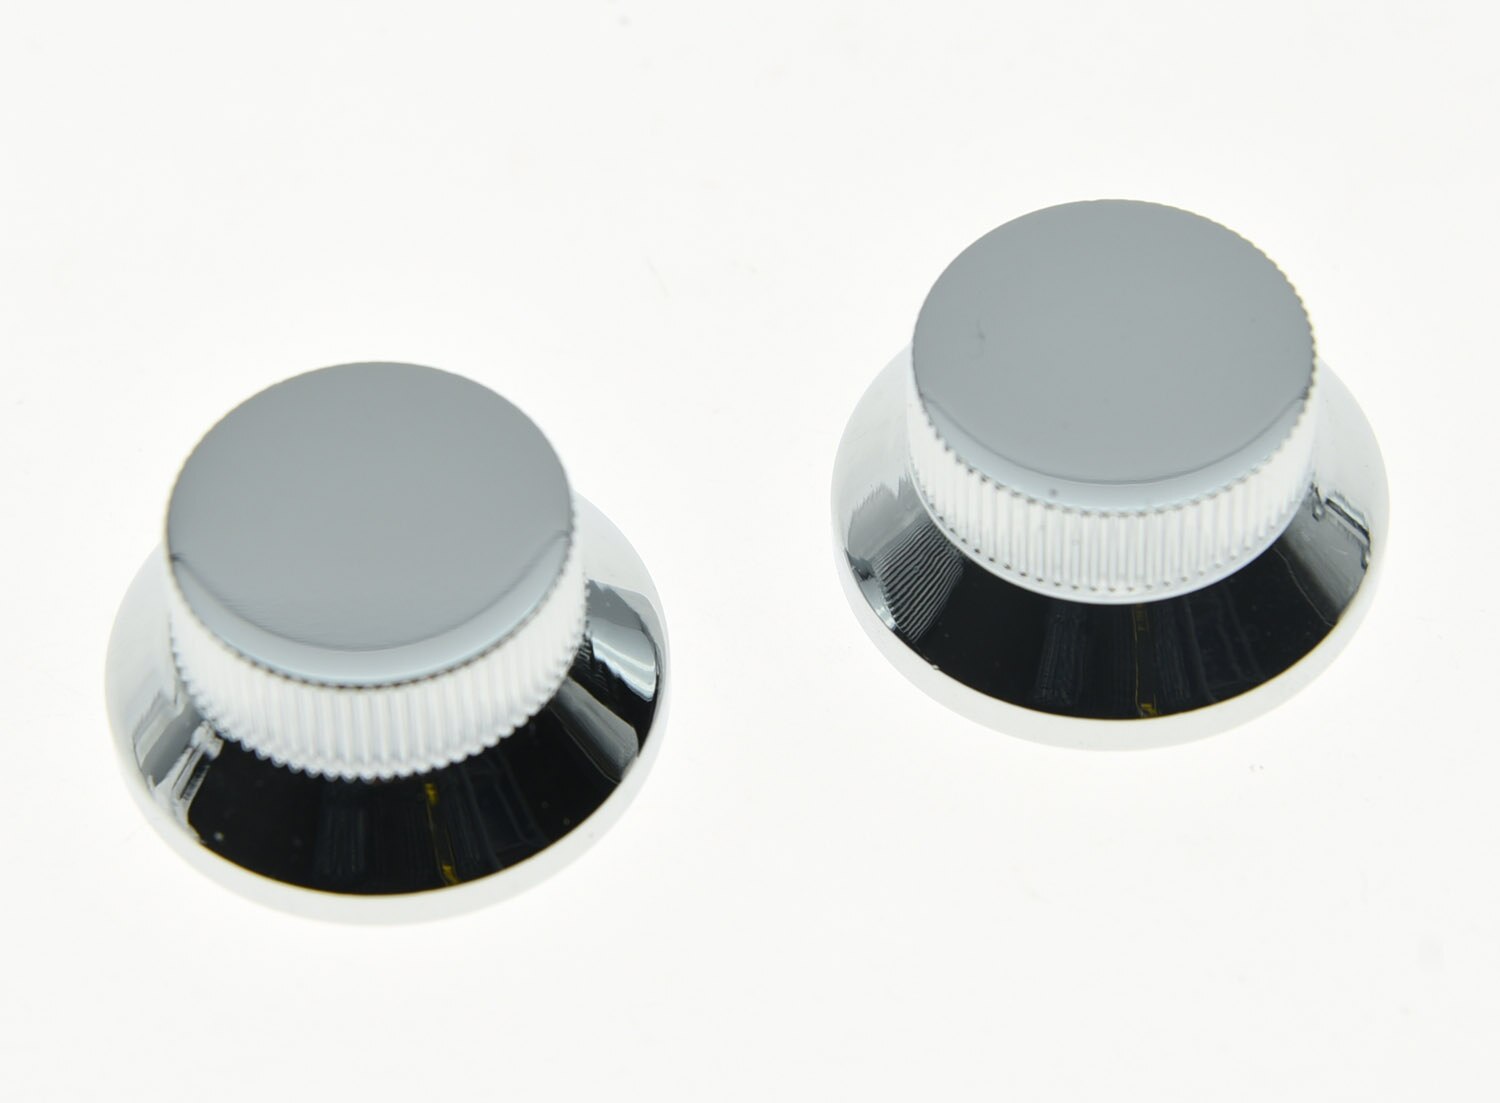 KAISH 2 stks Chroom Metalen Top Hat Bell Knoppen Push Op Gitaar Bas Knop voor 5.8mm Potten